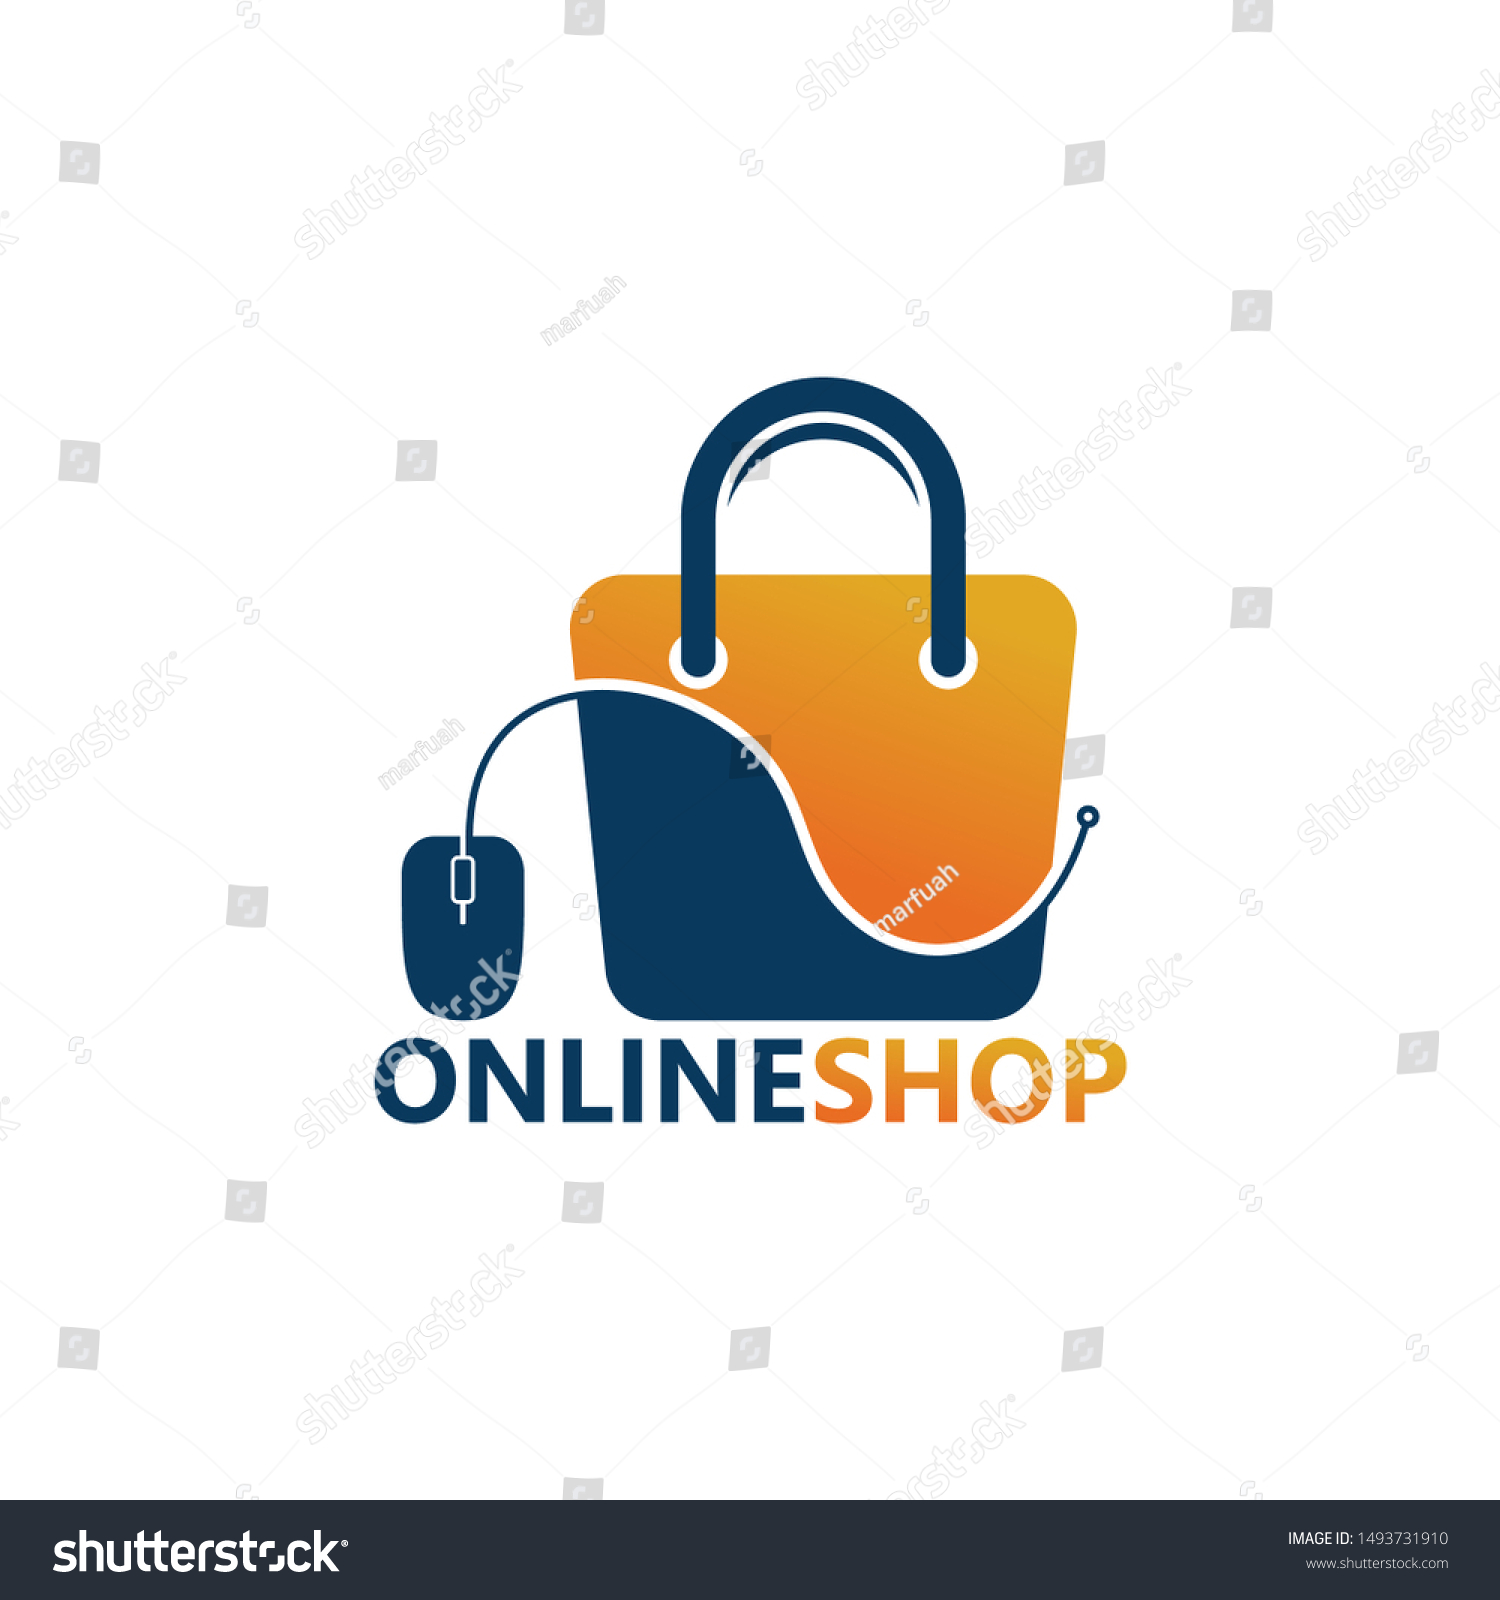 Online Shop Logo Template Design Vector Stock Vector (Royalty Free ...